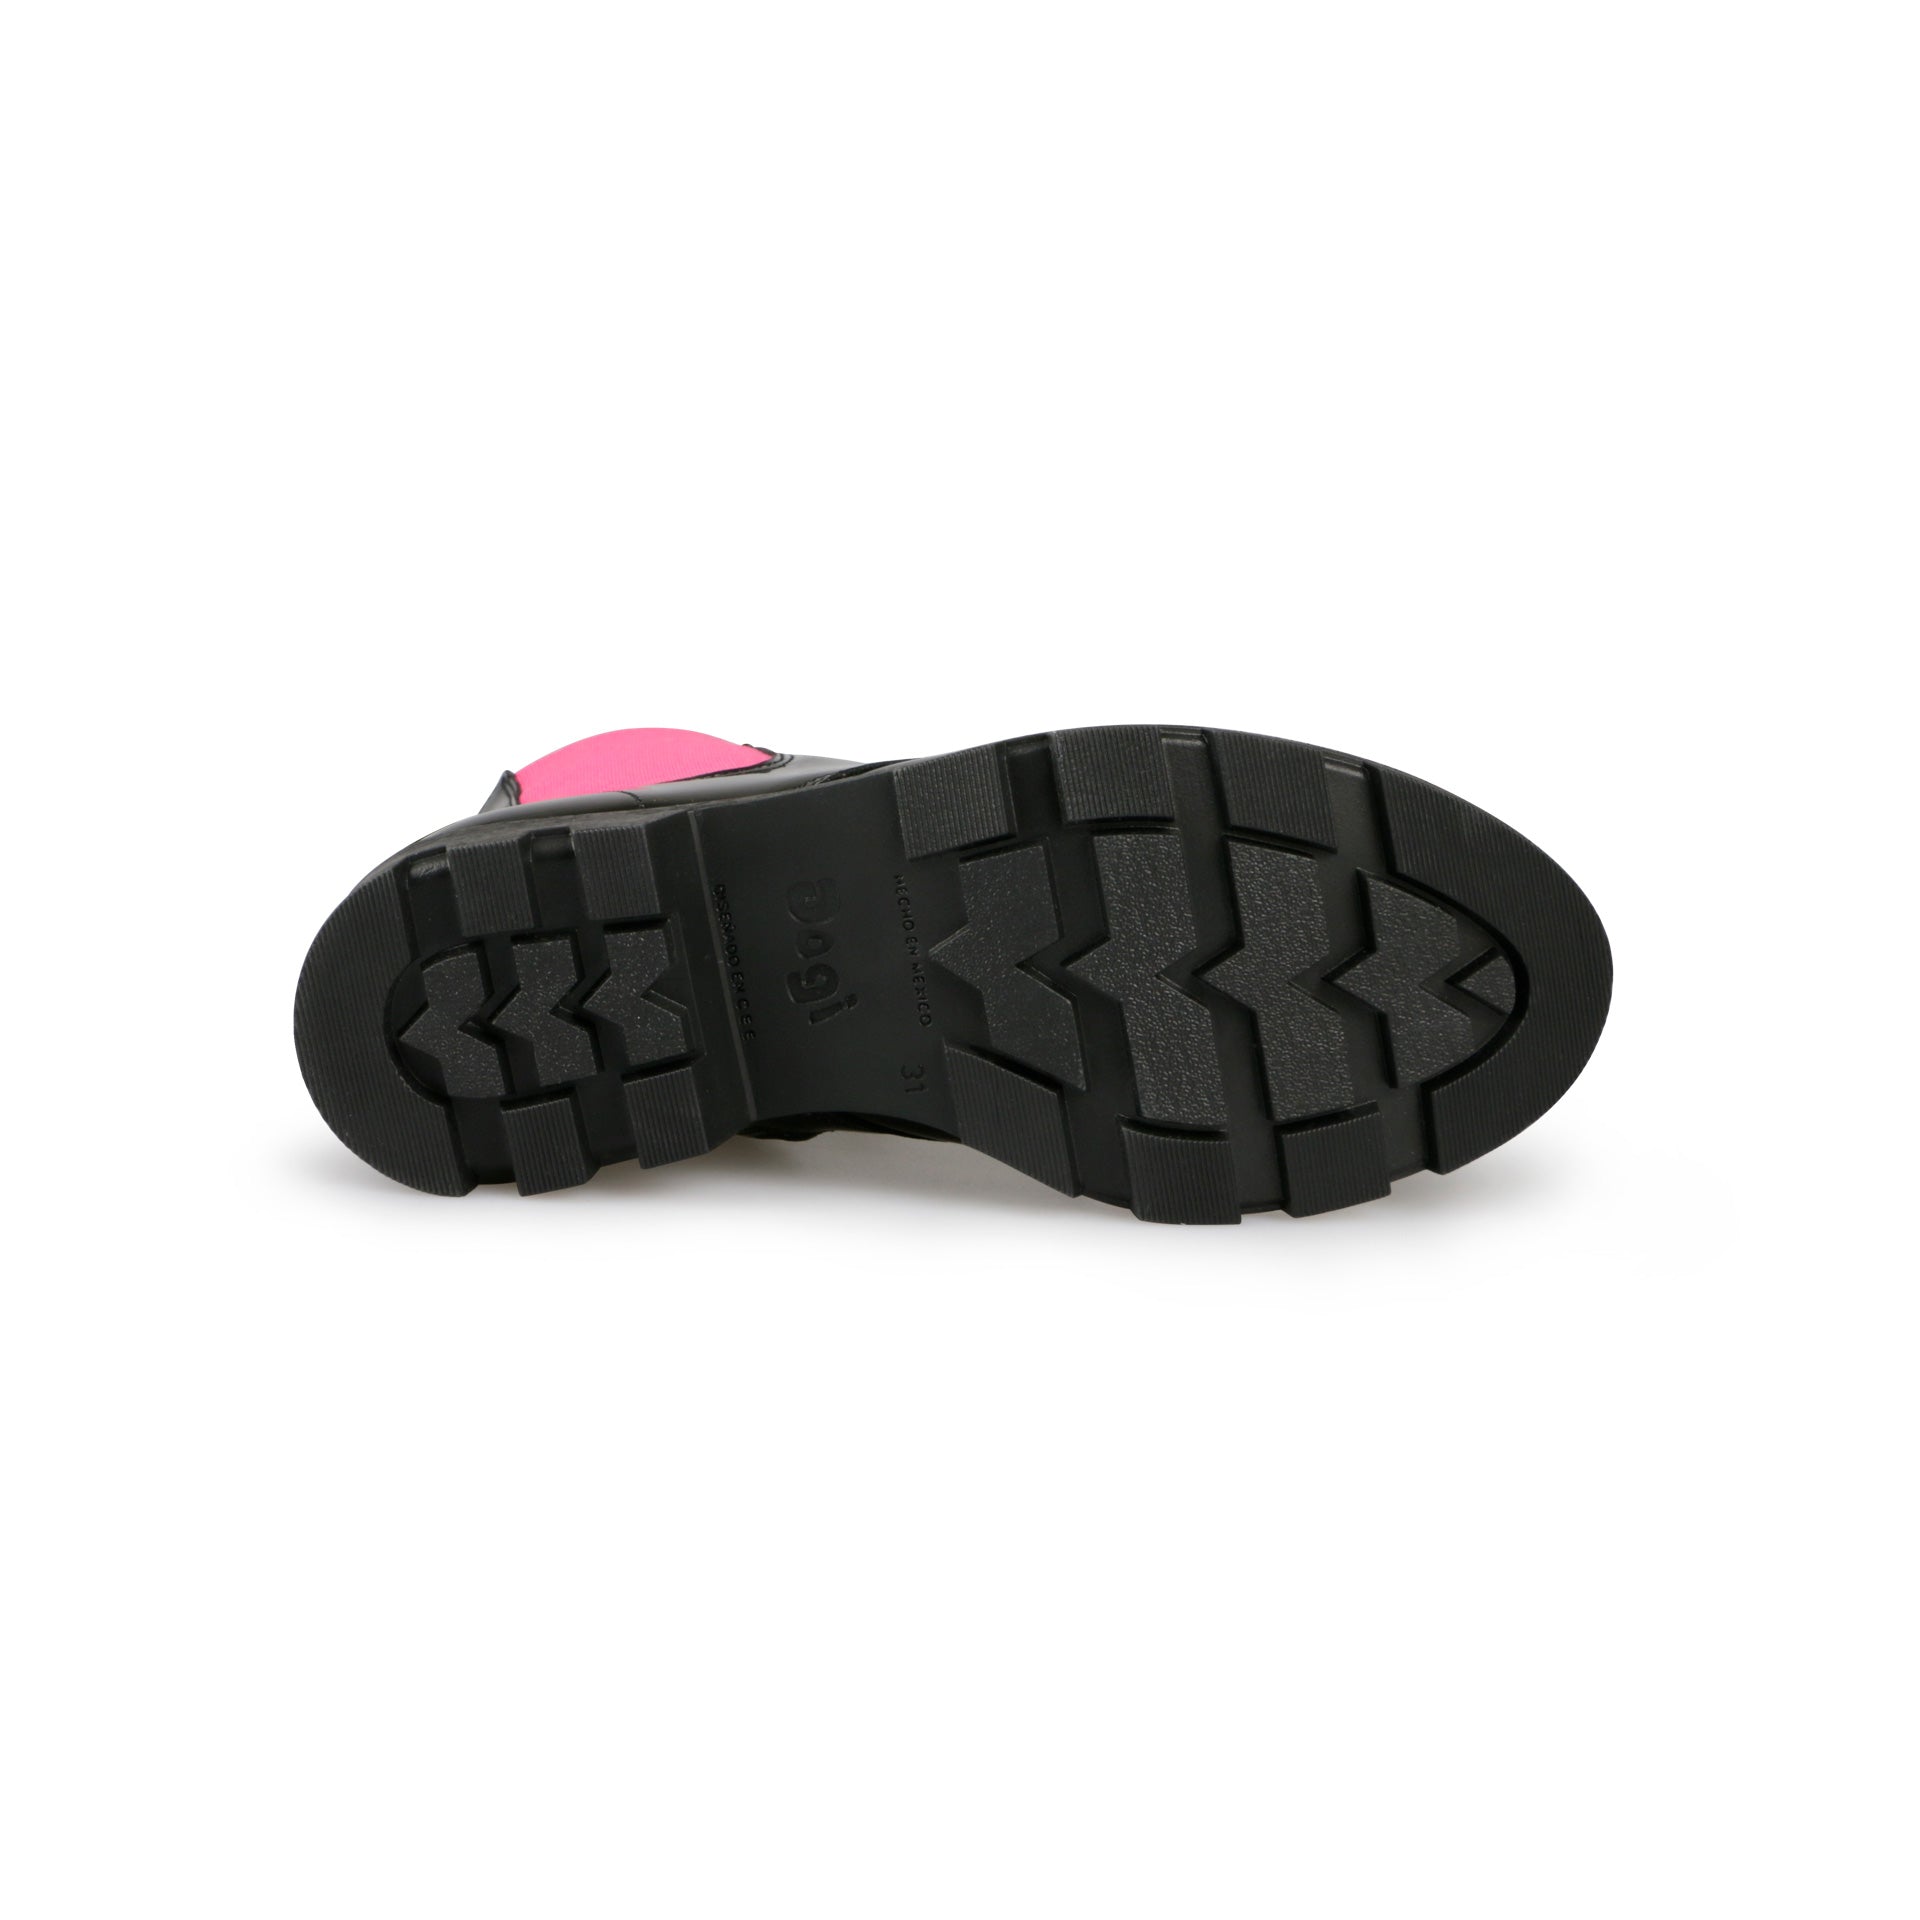 Zapato Mary Jane para Niña - Tommy 2022 Charol Negro – Calzado Dogi